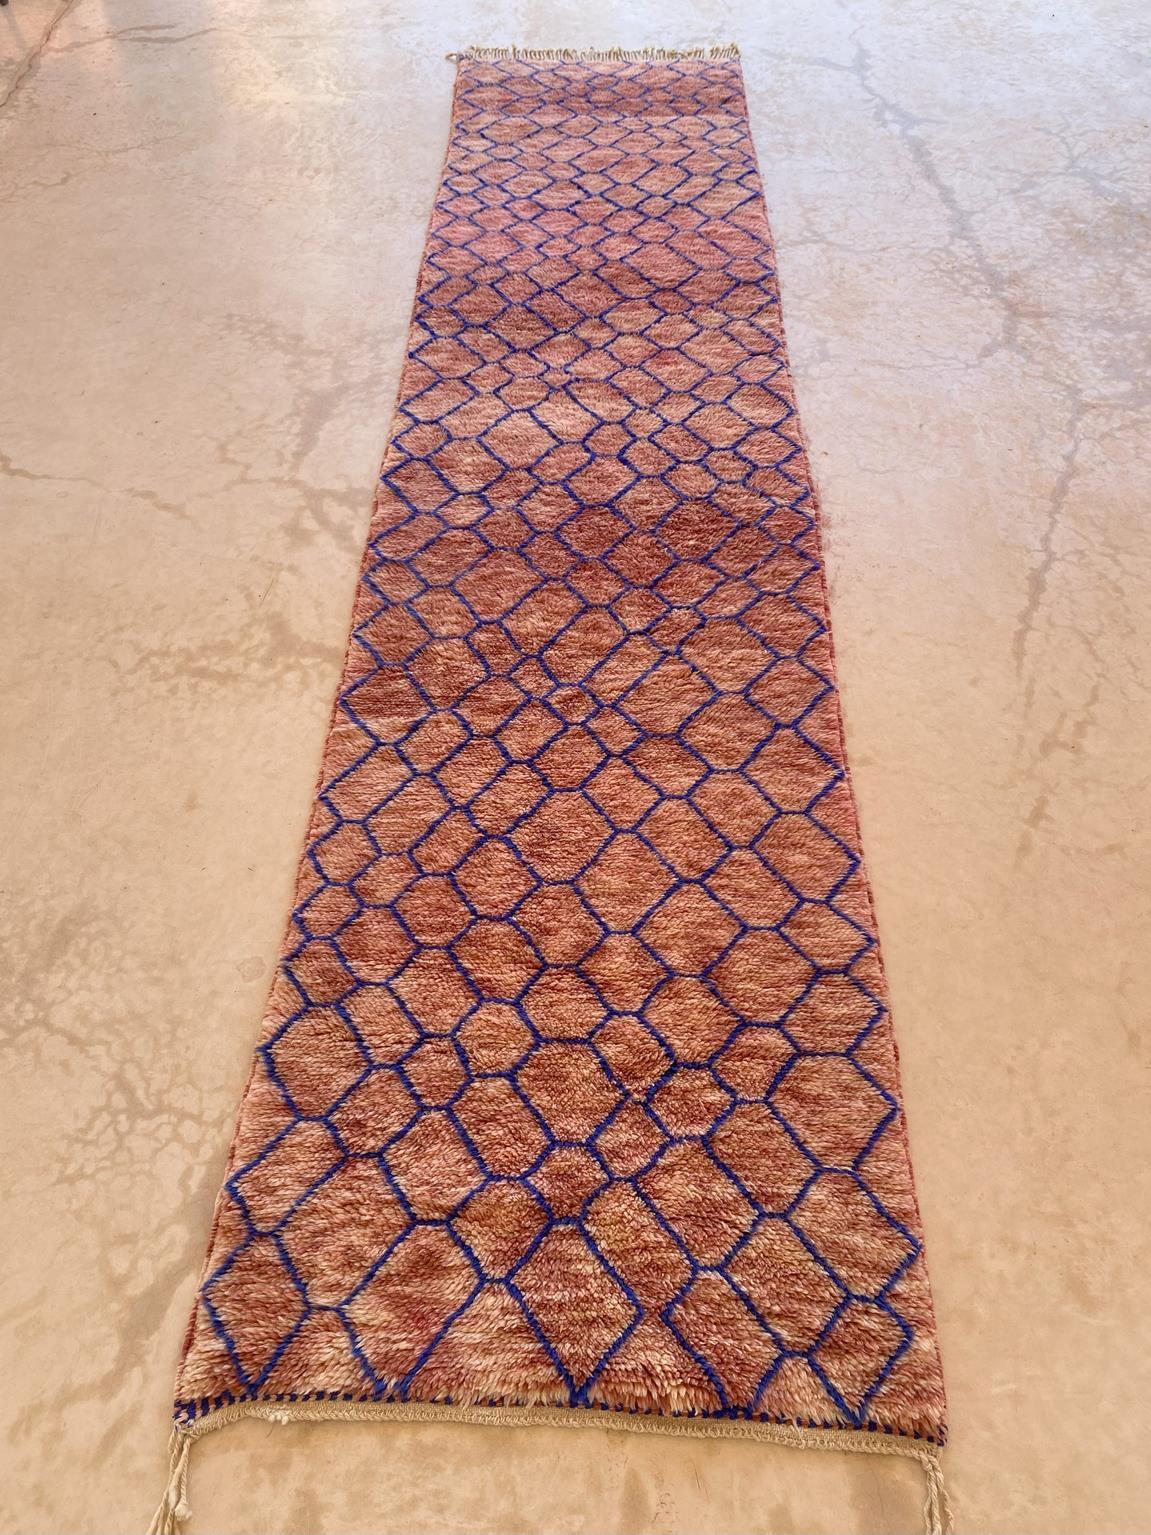 Modern Moroccan wool Mrirt runner rug - Pink/blue - 3.1x13.4feet / 95x408cm For Sale 3